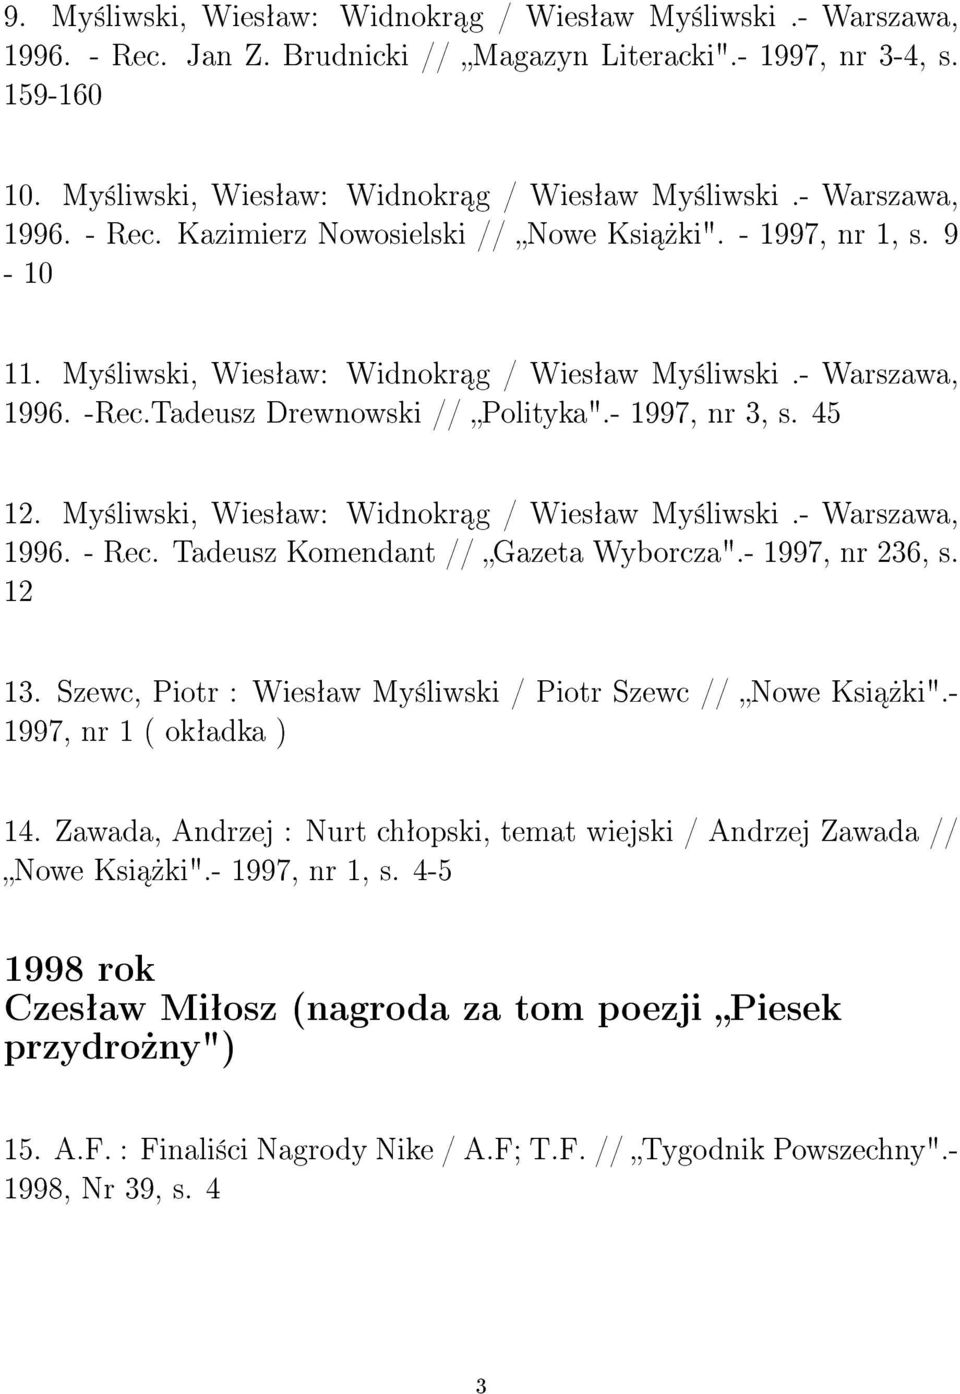 My±liwski, Wiesªaw: Widnokr g / Wiesªaw My±liwski.- Warszawa, 1996. - Rec. Tadeusz Komendant // Gazeta Wyborcza".- 1997, nr 236, s. 12 13.